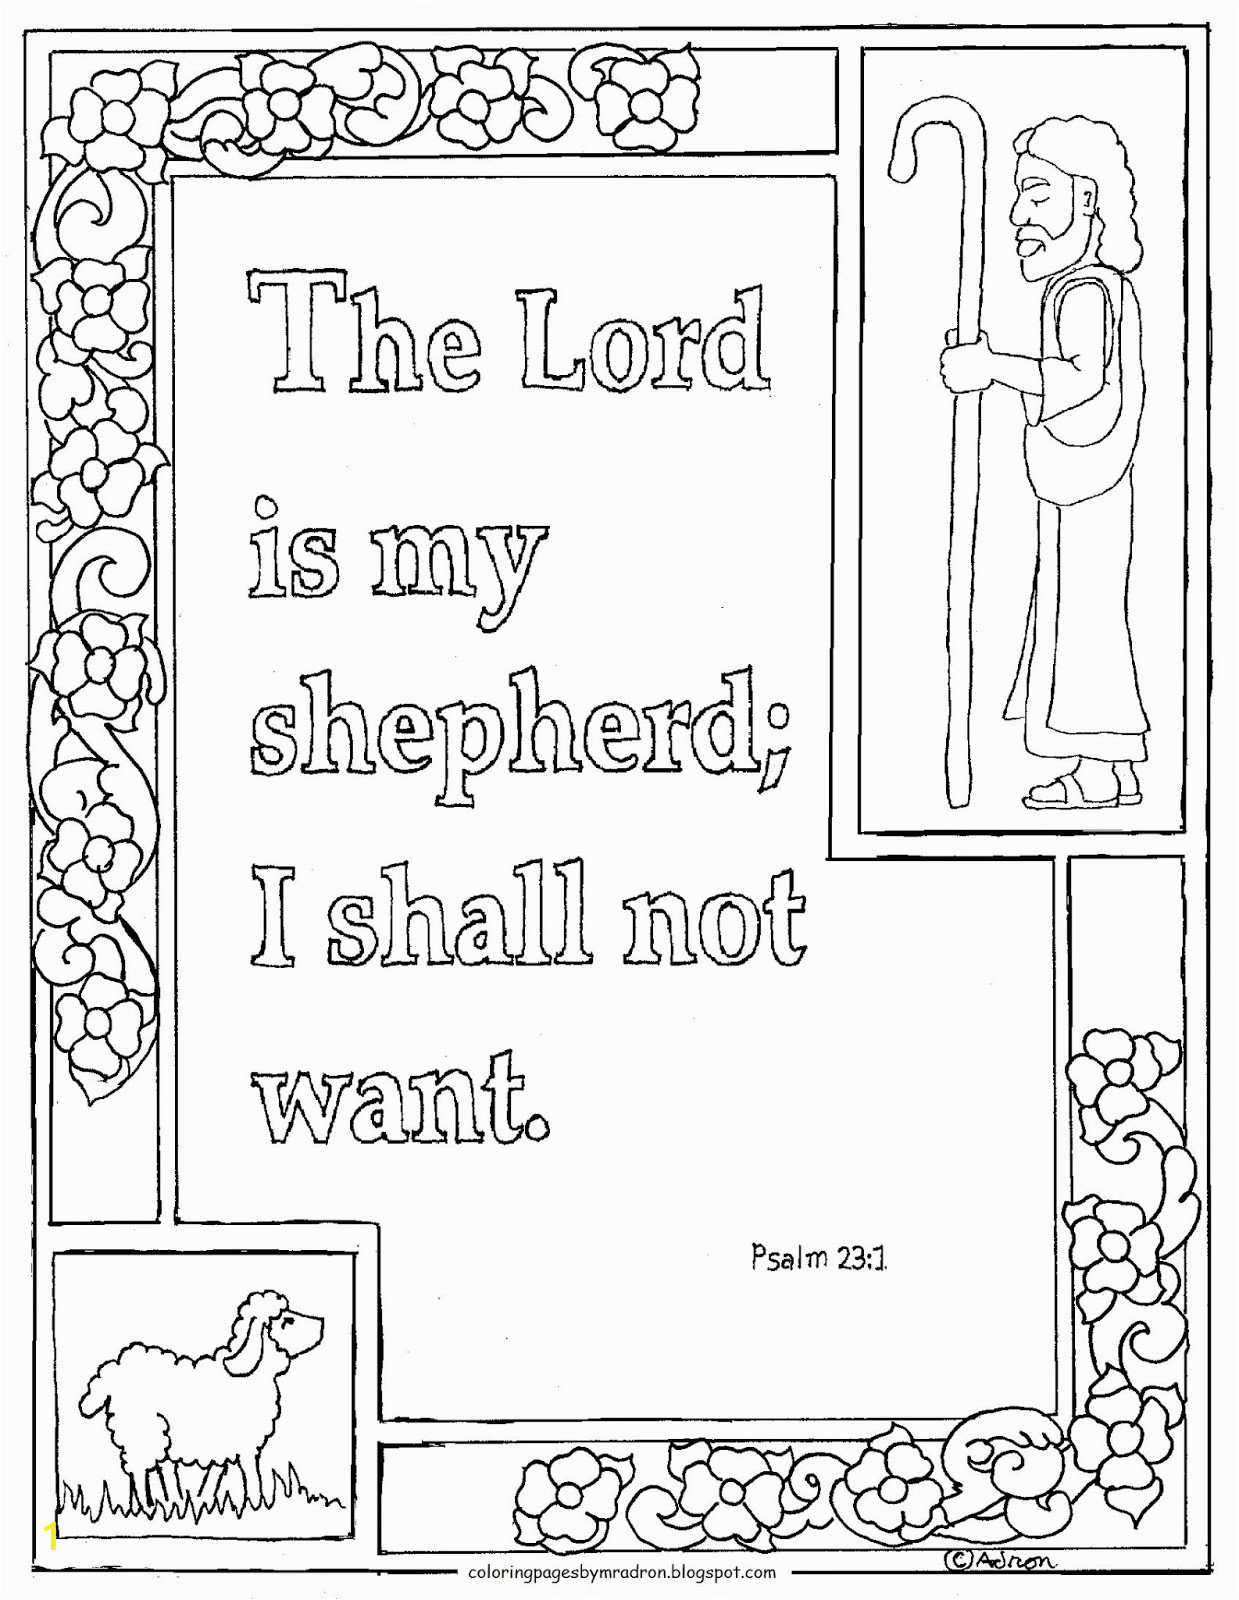 printable psalm 231 lord is my shepherd